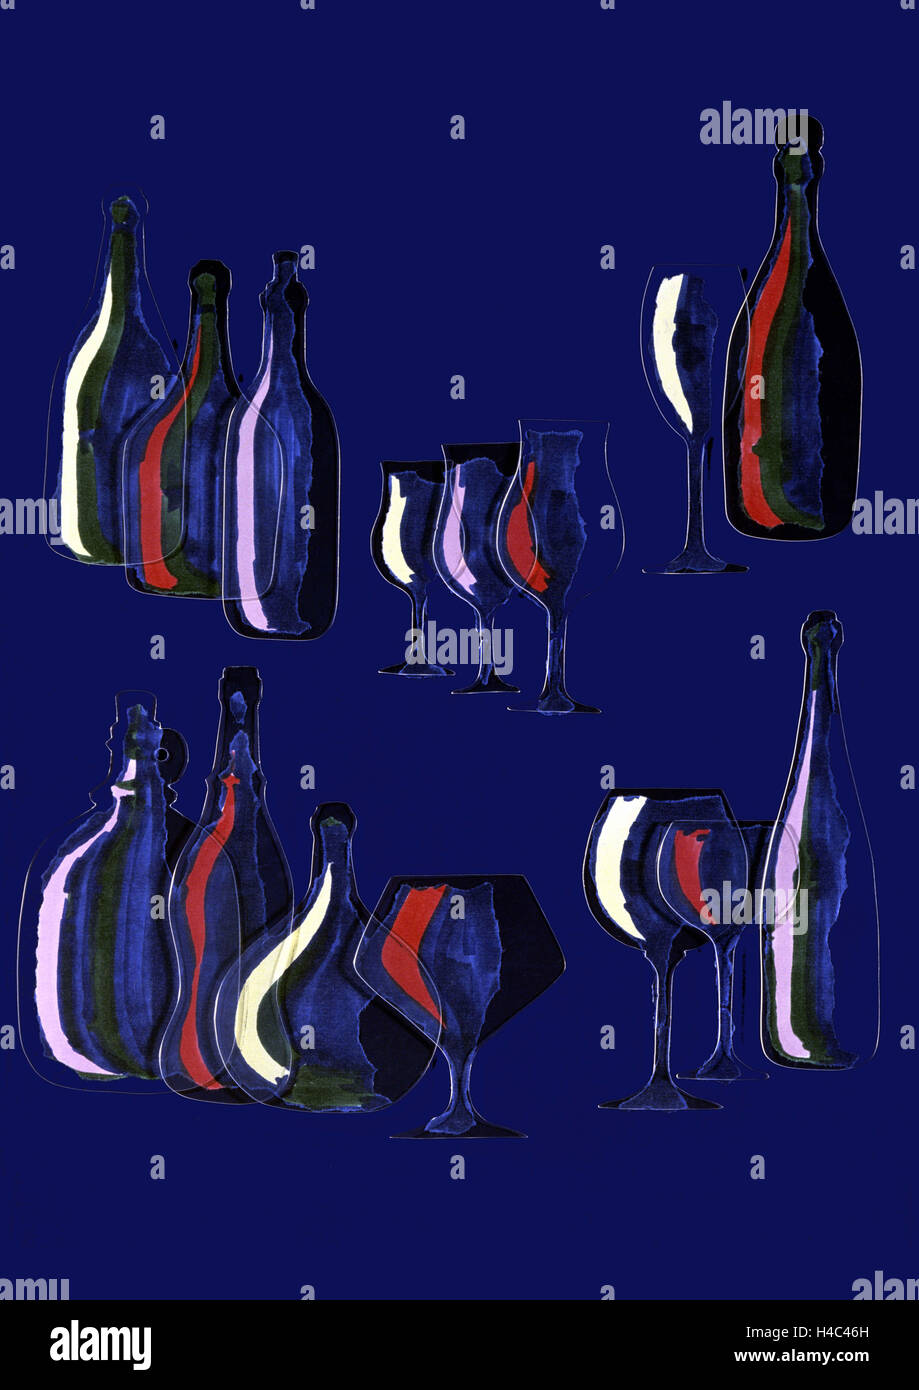 L'art moderne : fond bleu foncé, les bouteilles de vin et verres à vin Banque D'Images